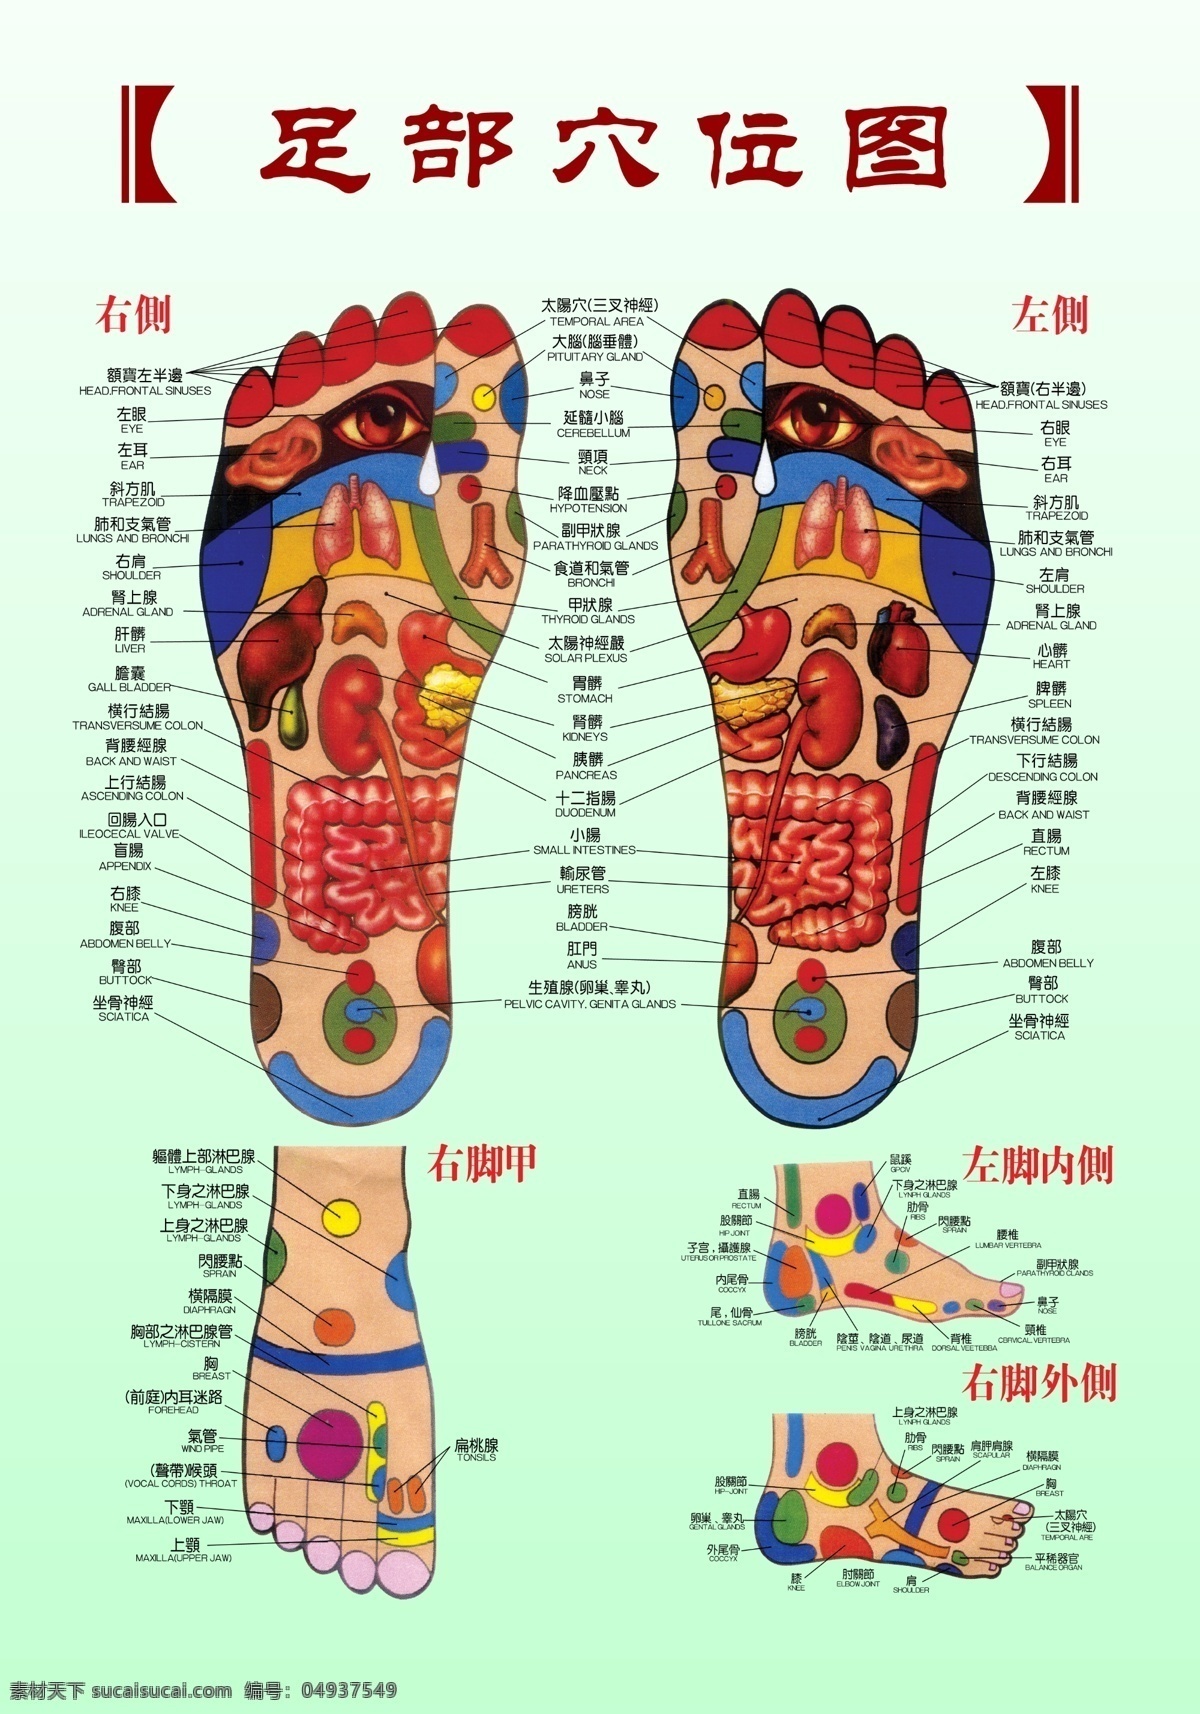 足疗穴位图 足疗 足部 穴位图 左脚 右脚 左脚内侧 右脚内侧 右脚甲 分层 源文件库